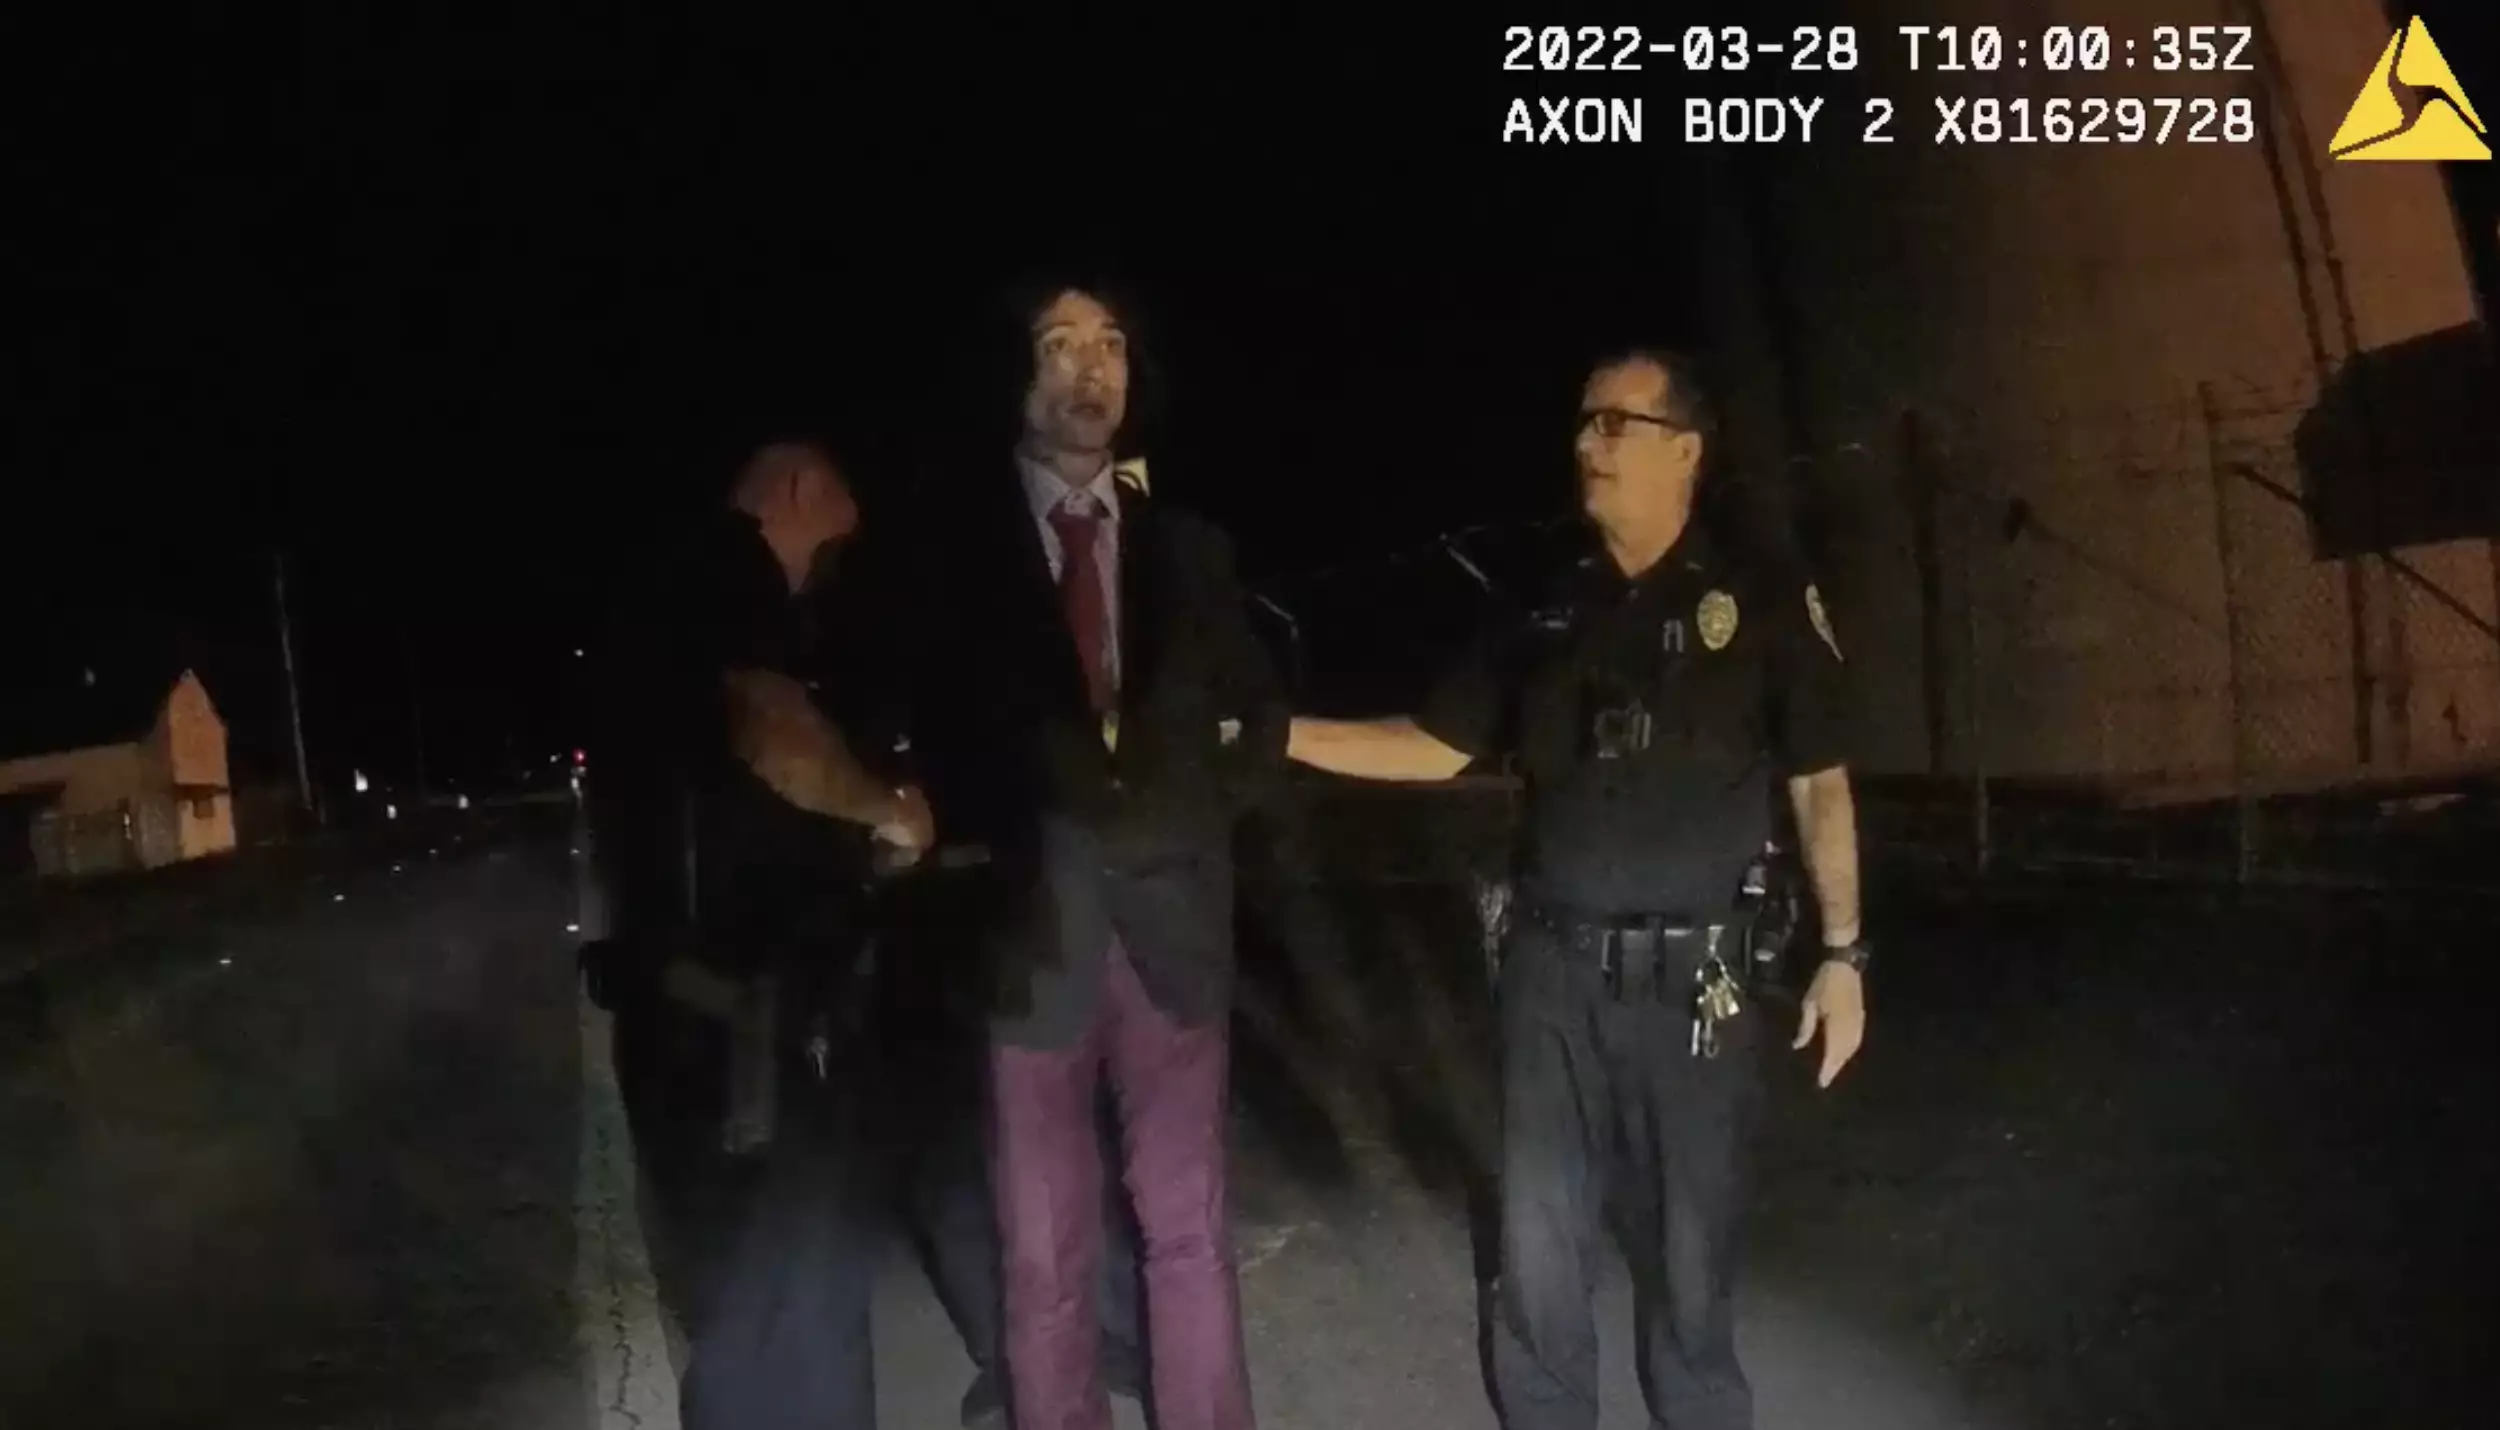 The actor's bizarre arrest was captured through bodycam footage.